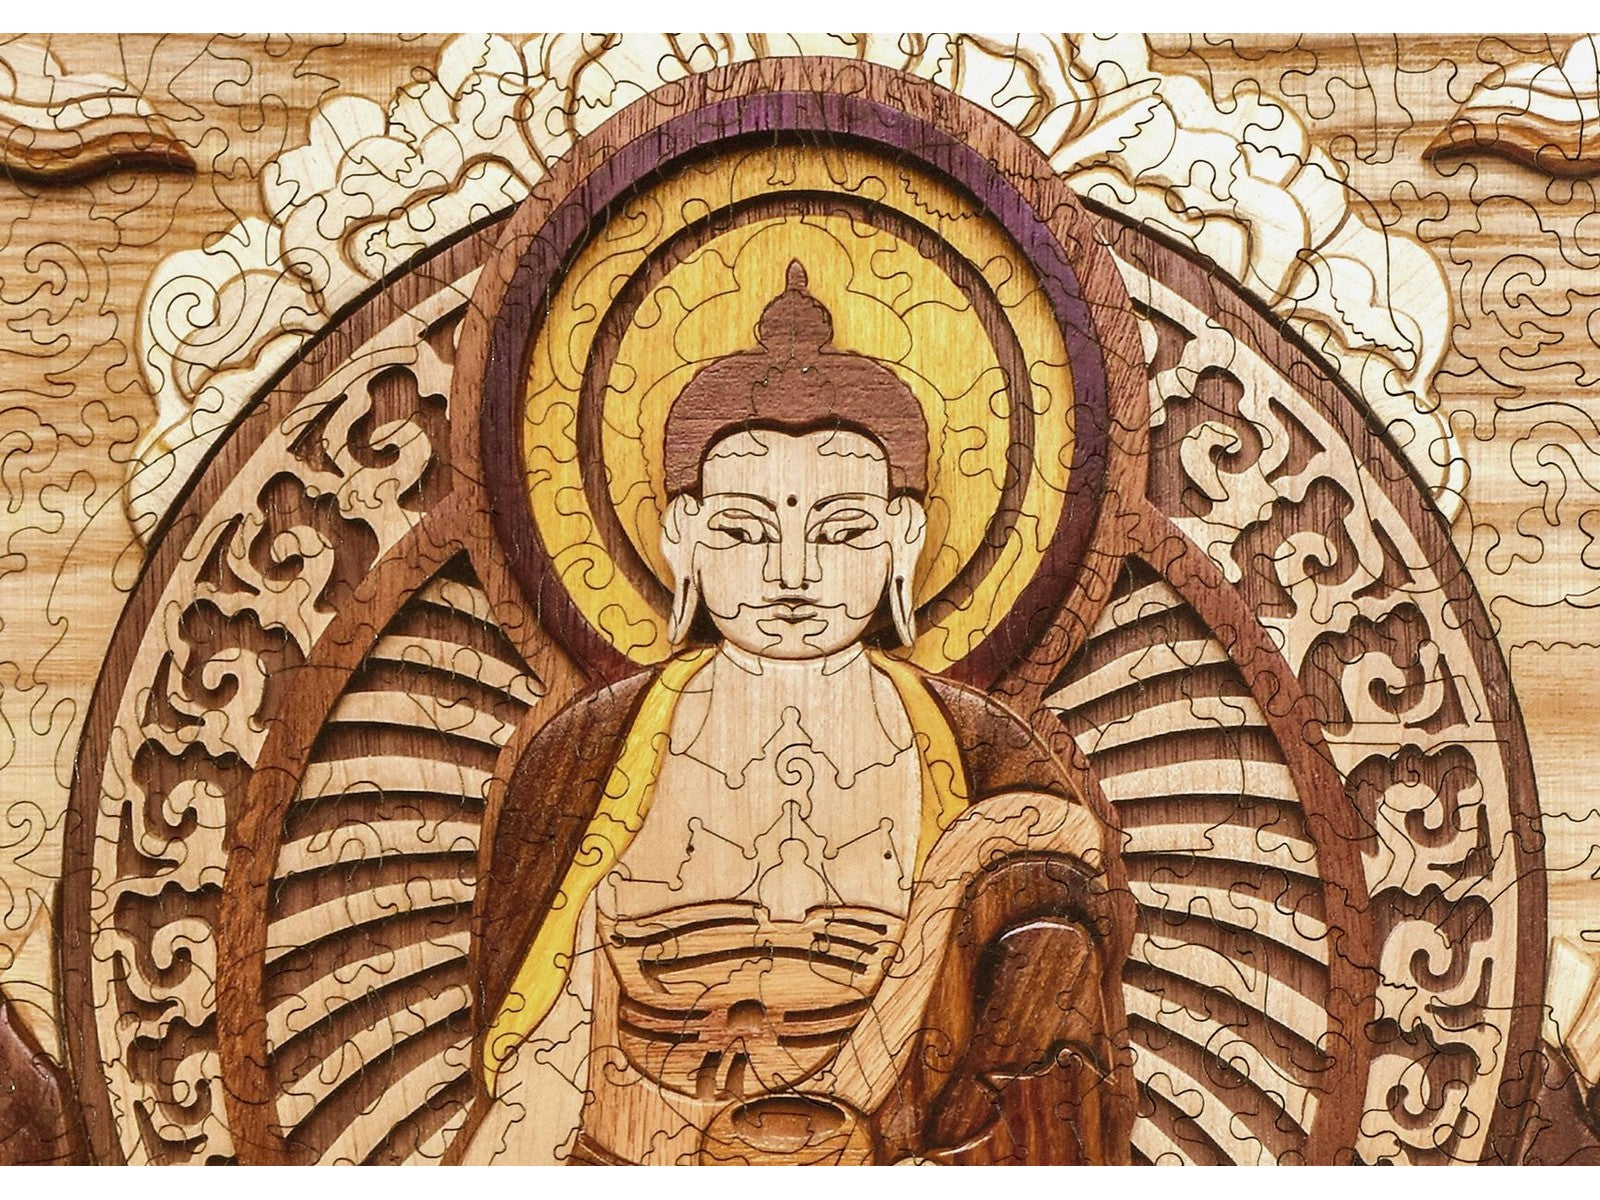 A closeup of the front of the puzzle, Shakyamuni Buddha.